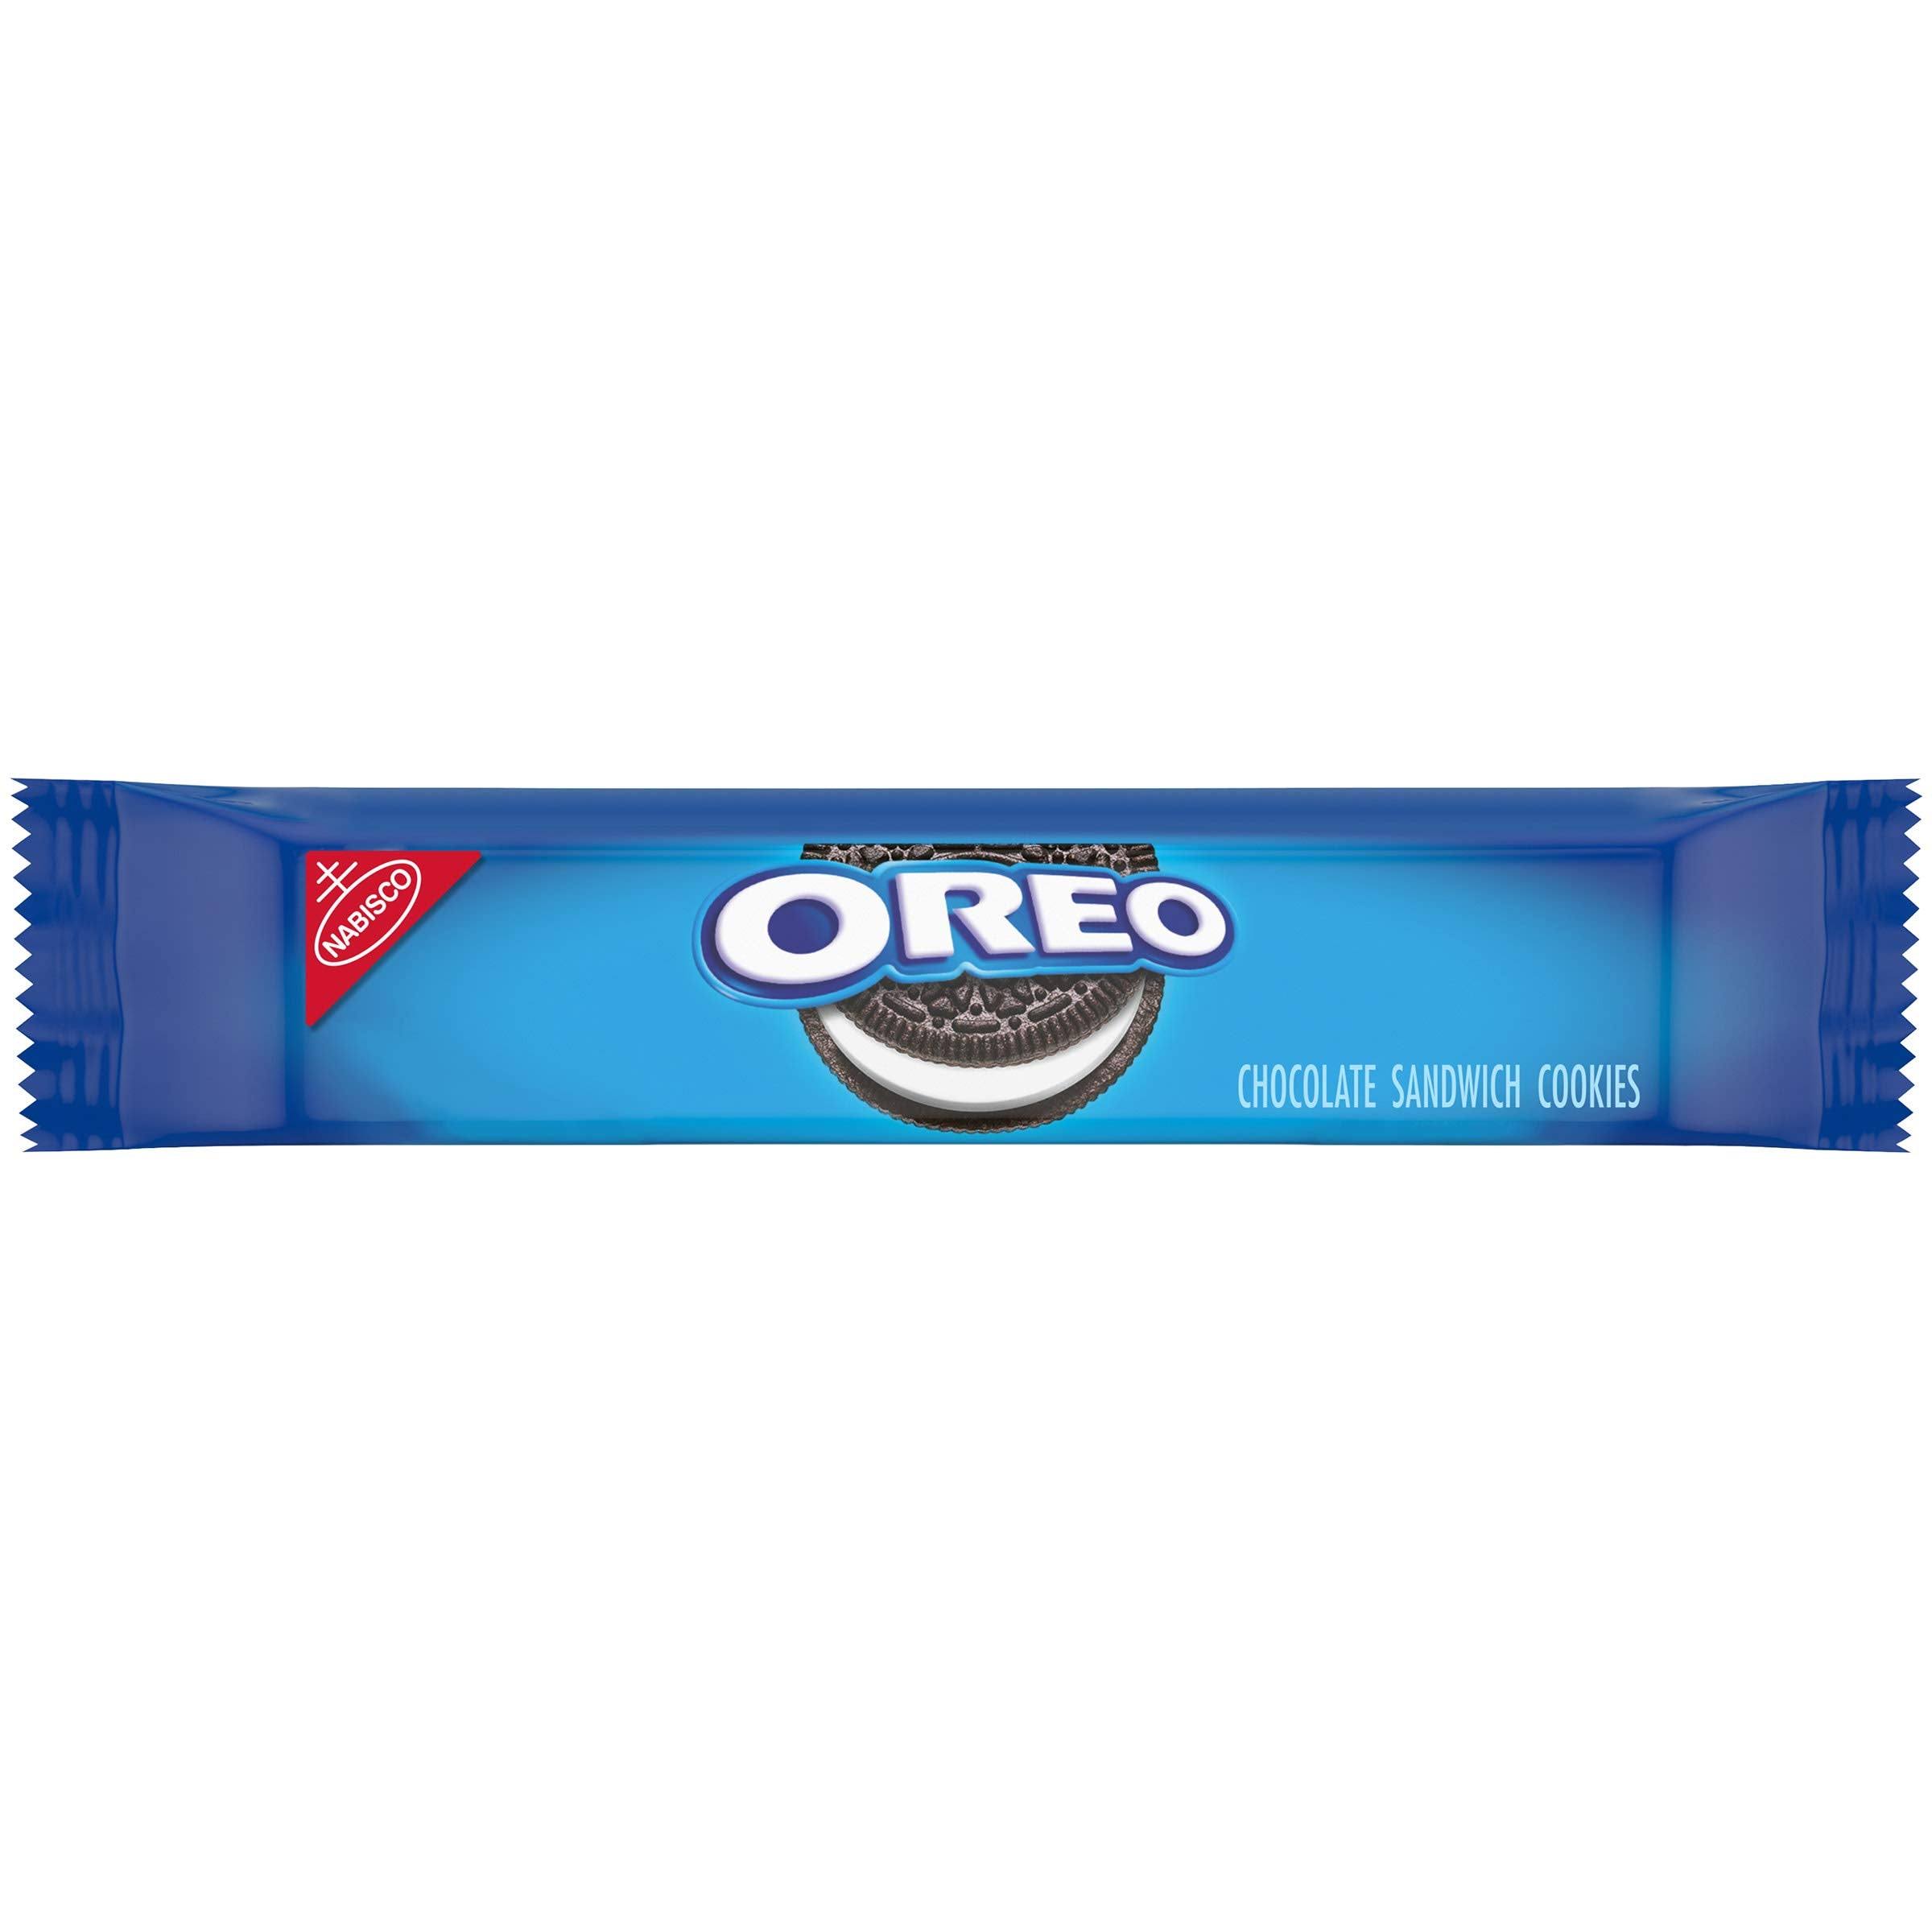 Oreo Cookies Single Serve Packs, Chocolate, 2.4 oz Pack, 6 Cookies/Pack, 12 Packs/Box